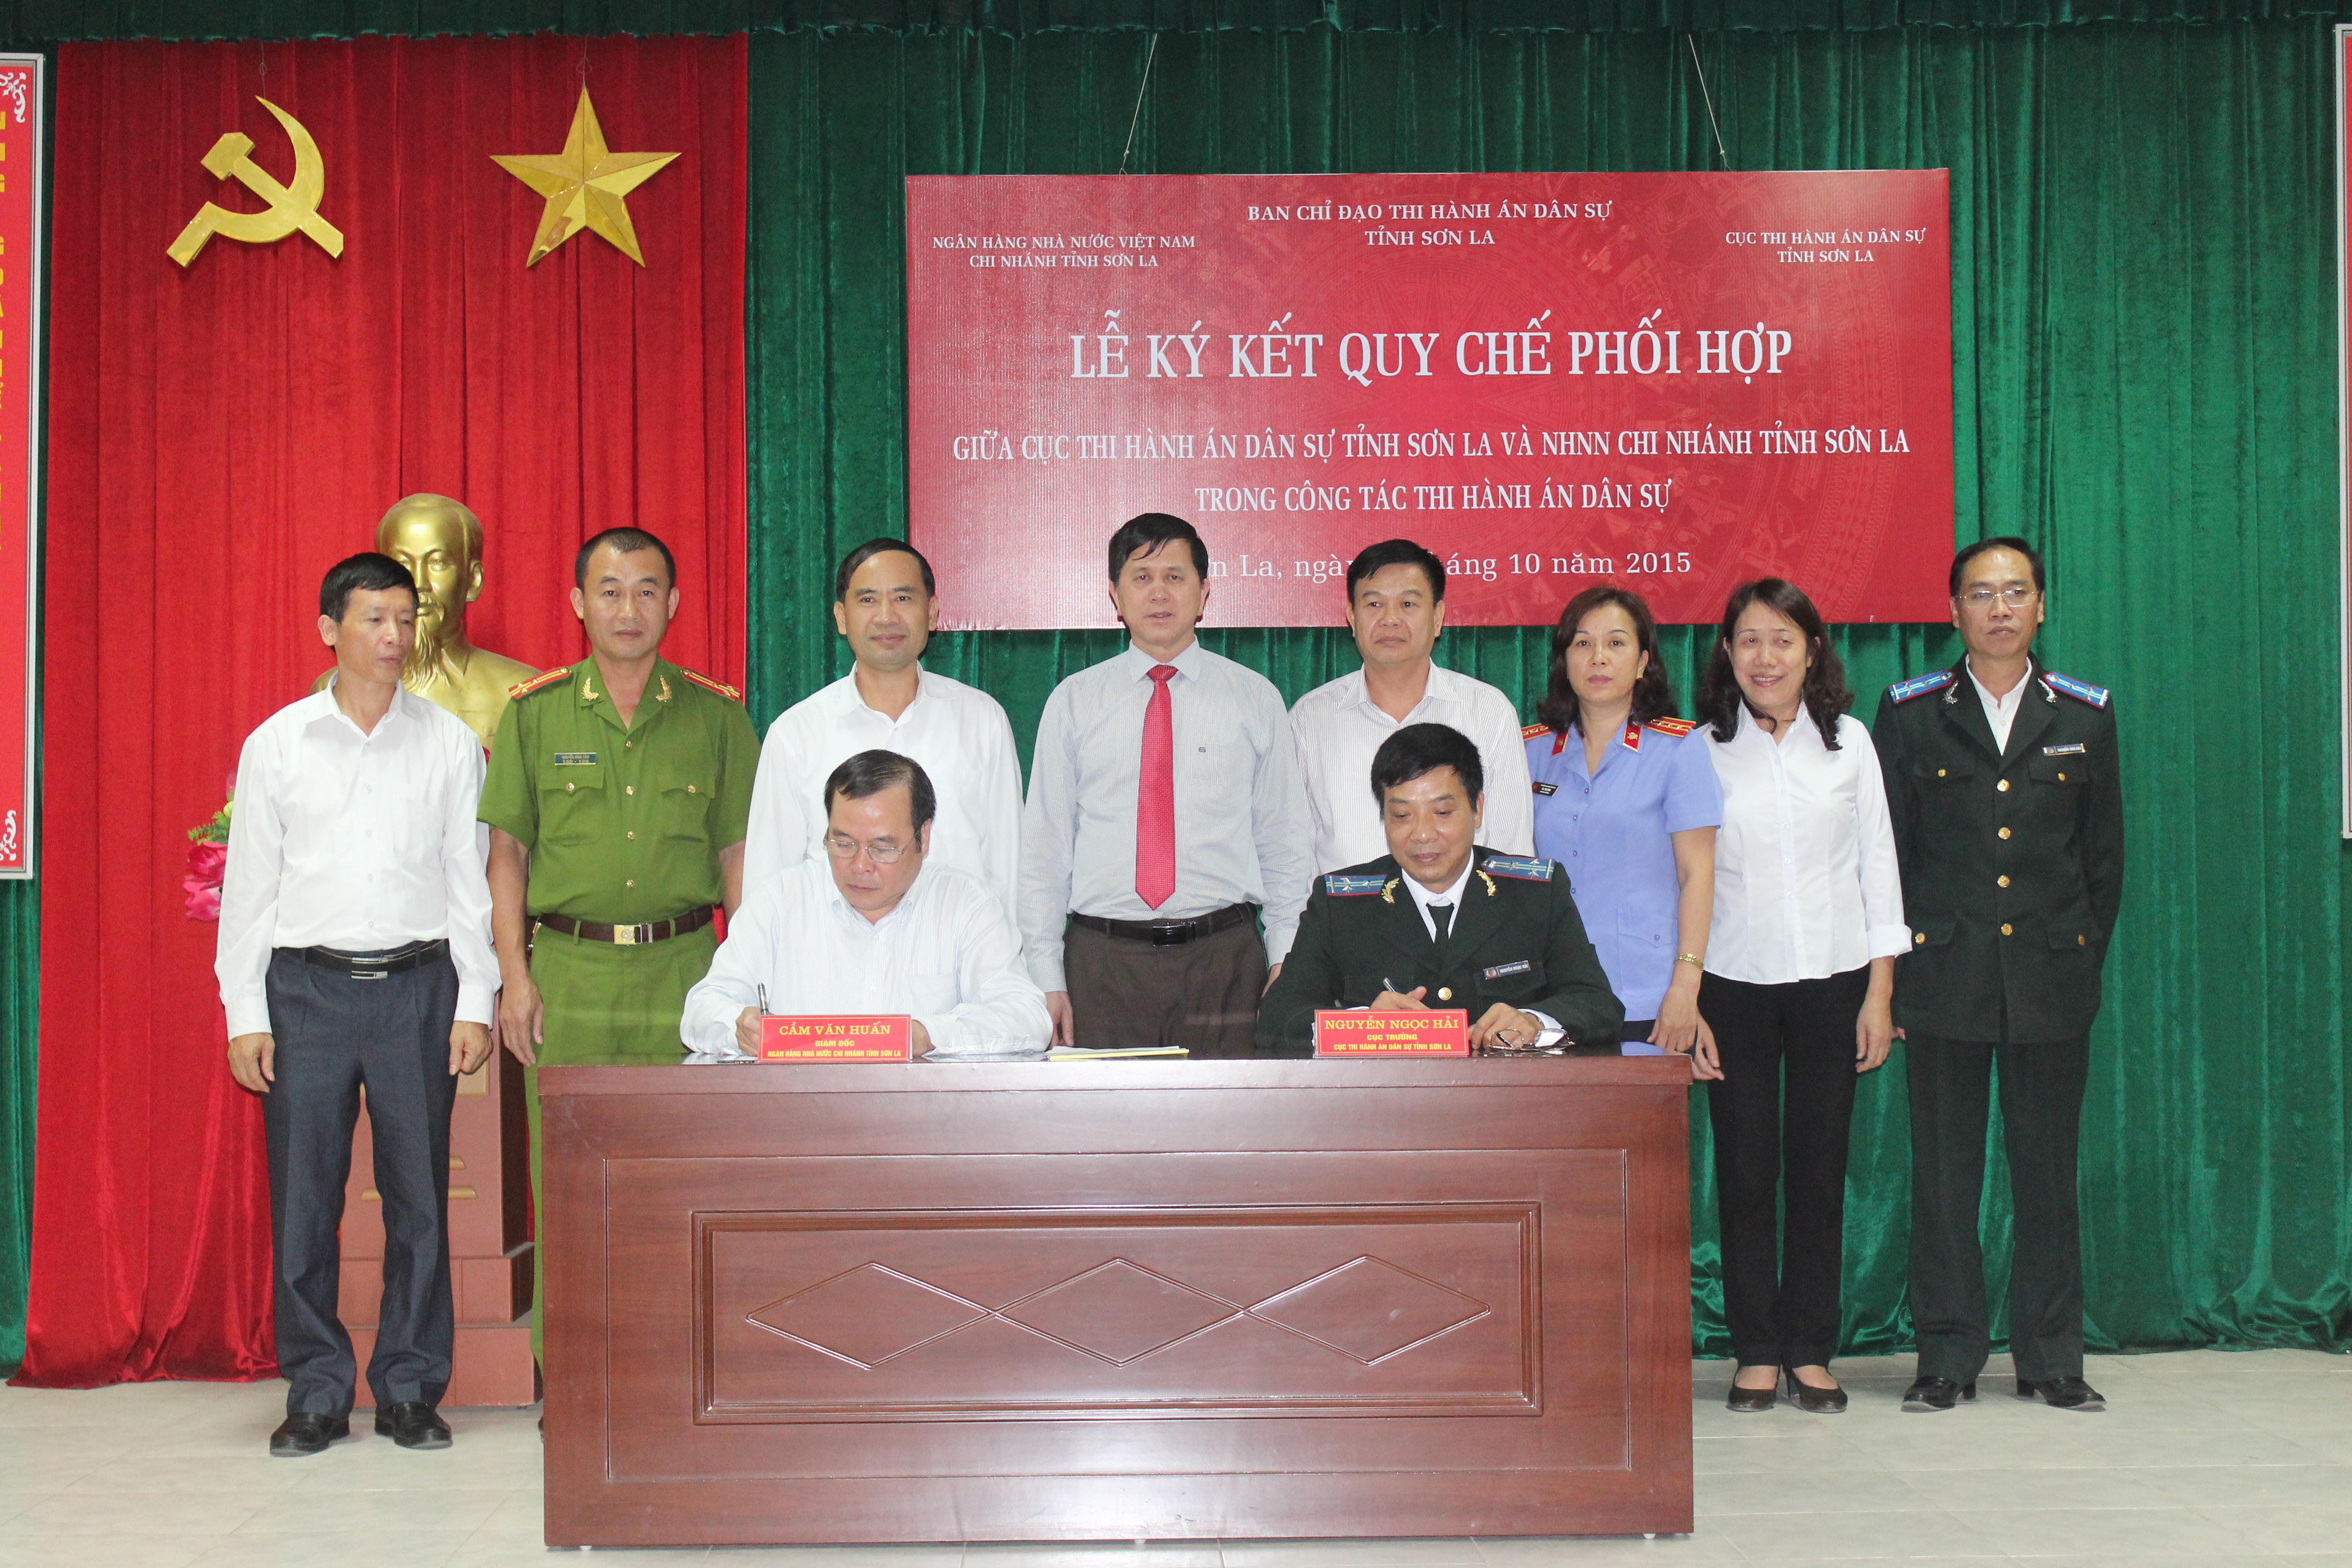 Cục Thi hành án dân sự tỉnh Sơn La và Ngân hàng nhà nước chi nhánh Sơn La tổ chức Lễ ký kết Quy chế phối hợp trong công tác thi hành án dân sự